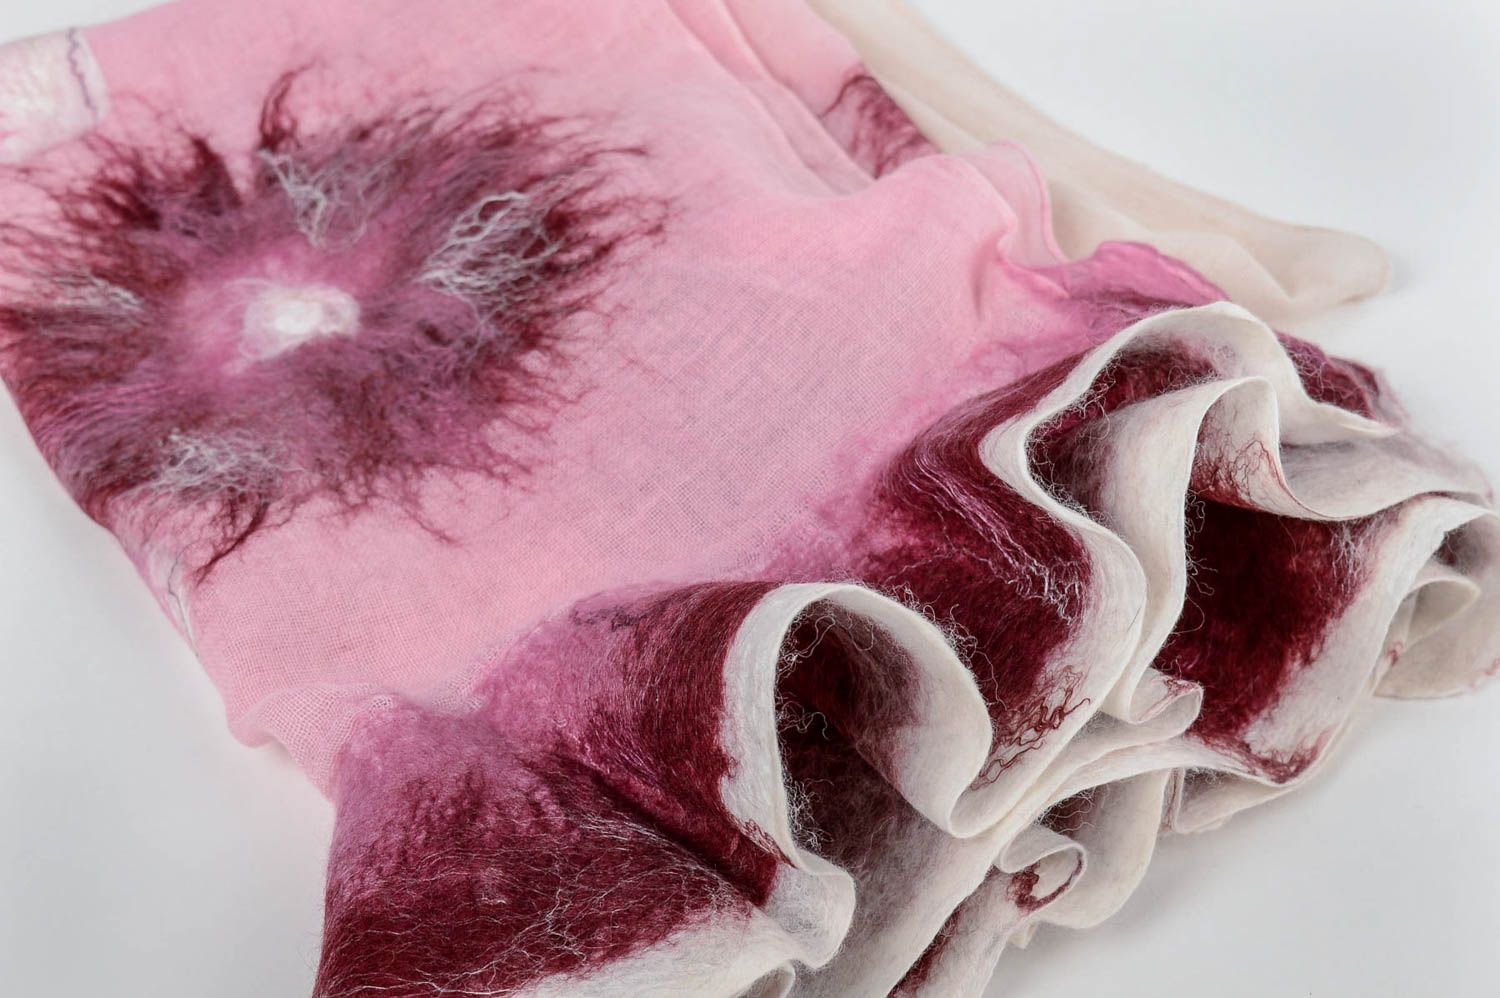 Handmade gefilzter Schal Frauen Accessoire Geschenk für Frau schön rosa foto 4